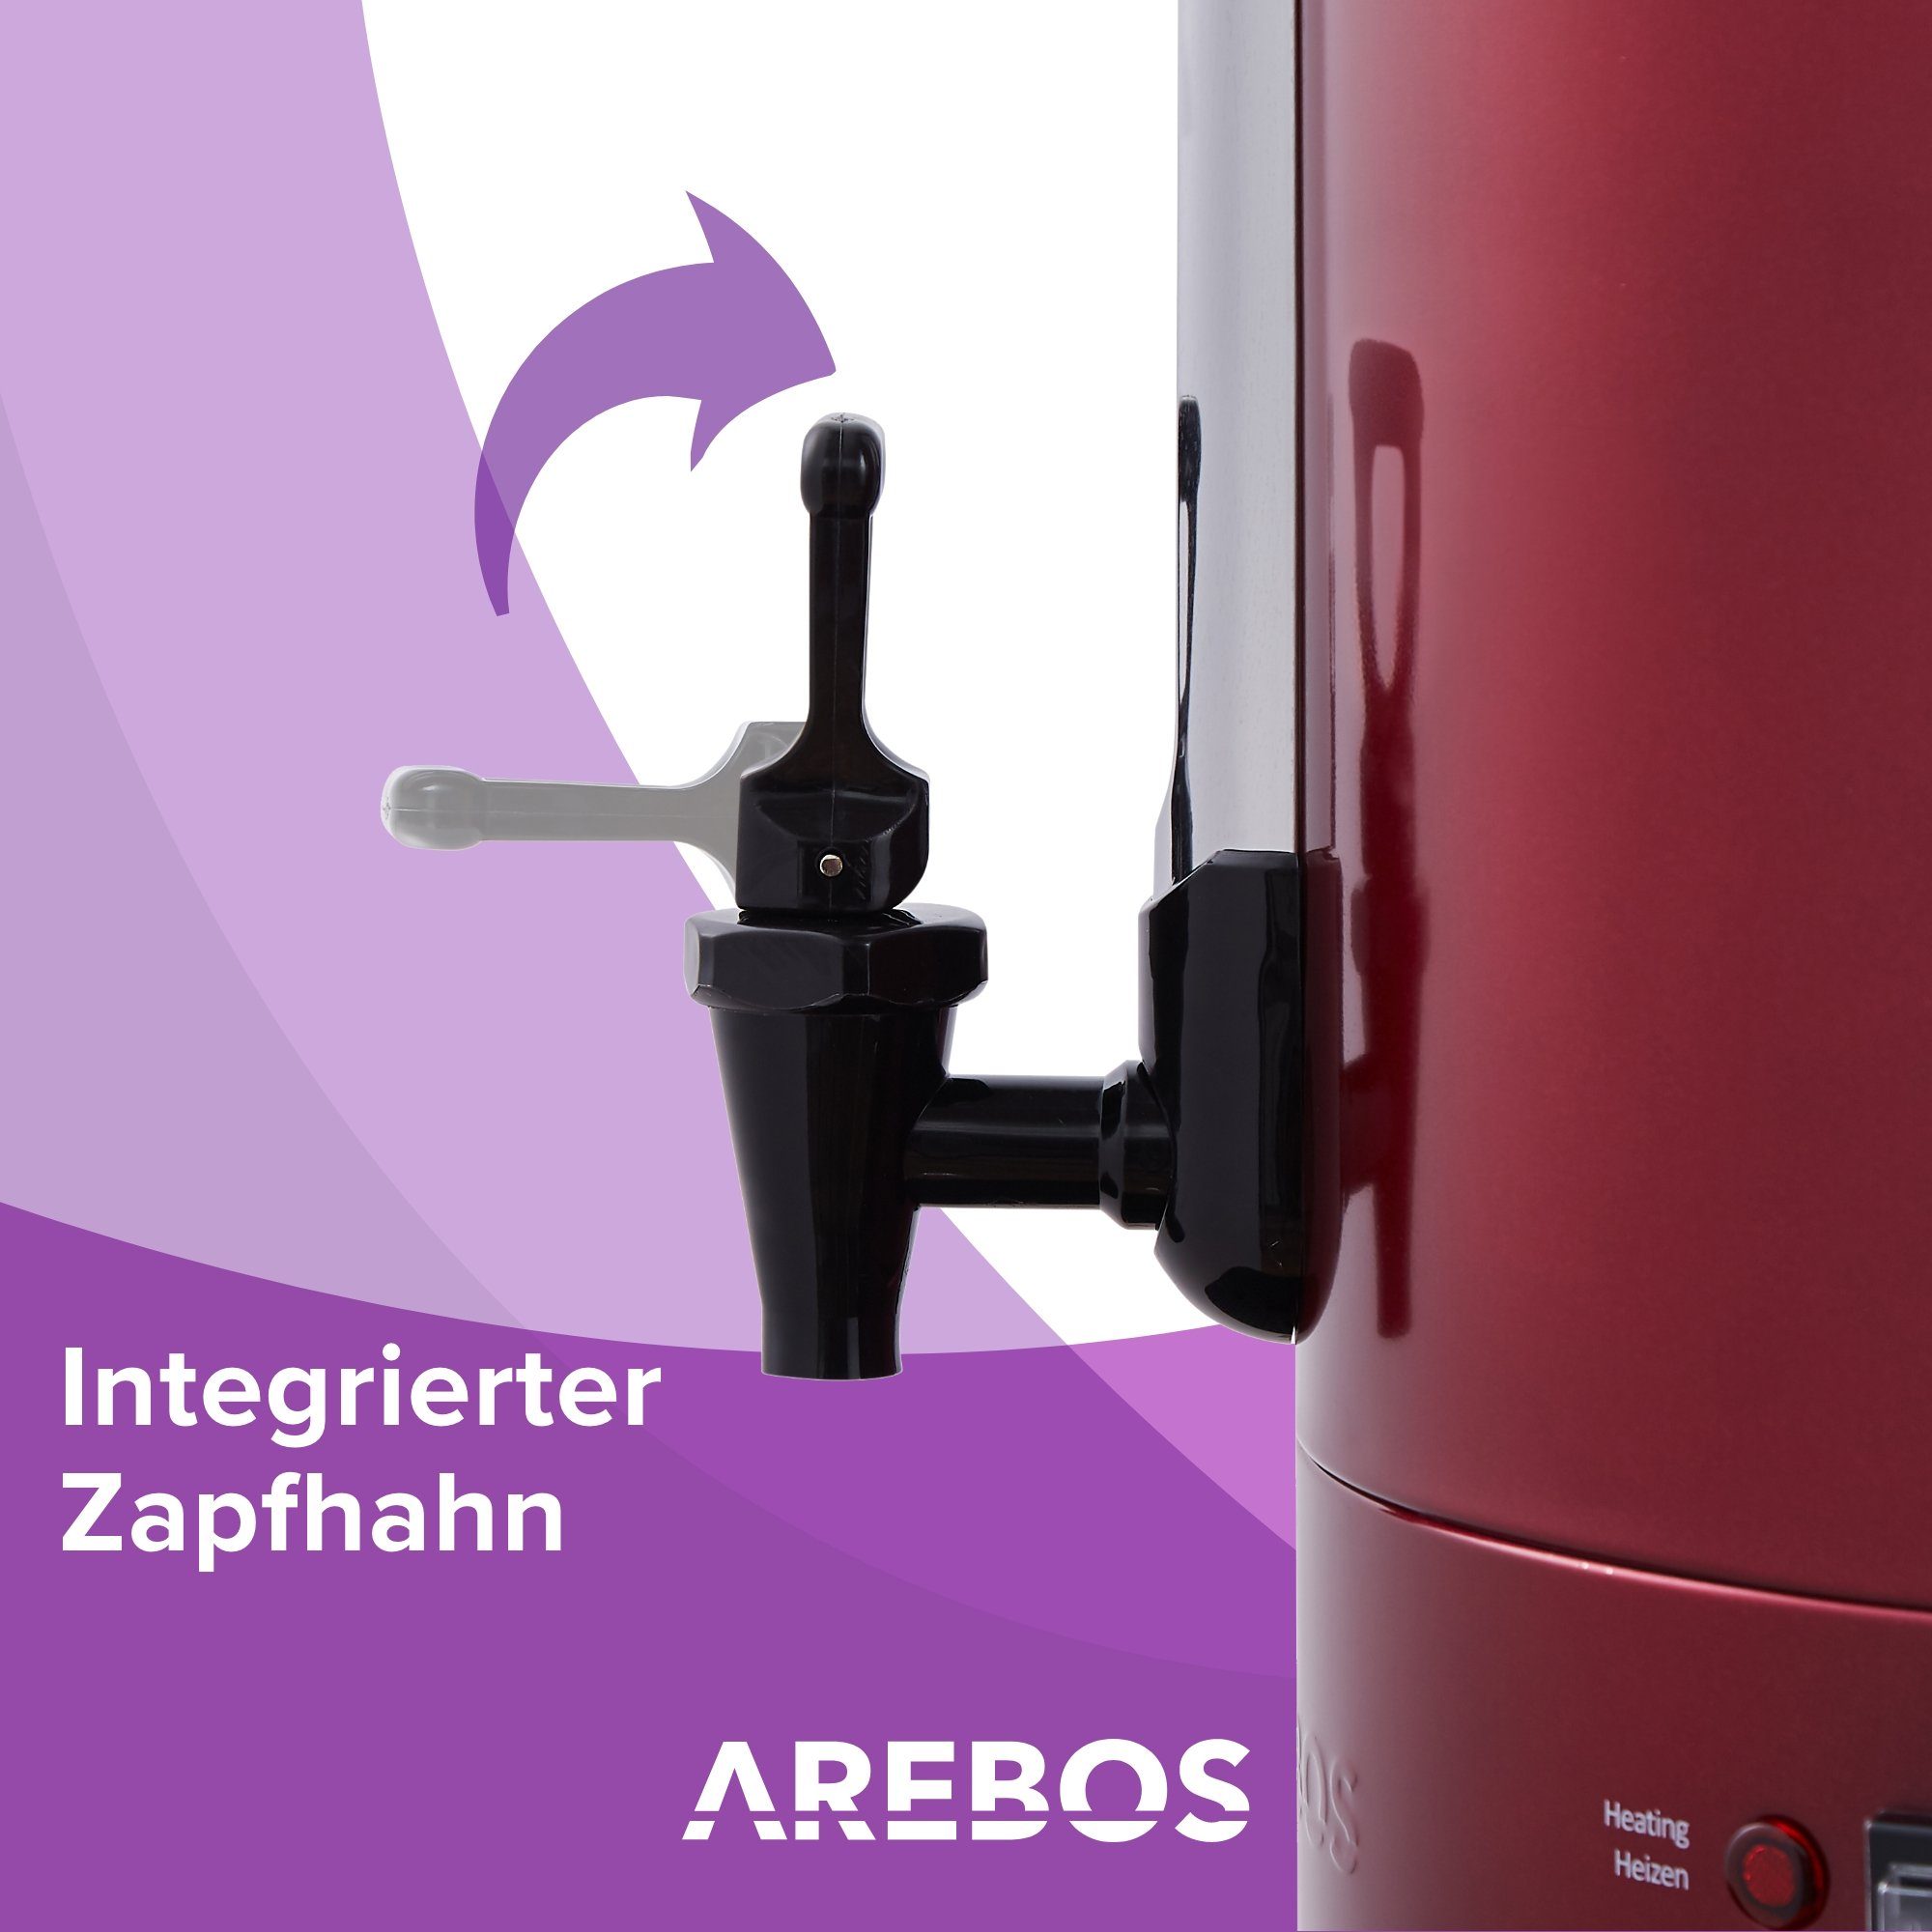 Temperatureinstellung Arebos und 20 Farben, rot 3 Überhitzungsschutz, Glühweinautomat 1650,00 30-110°C, W Einkoch- L,